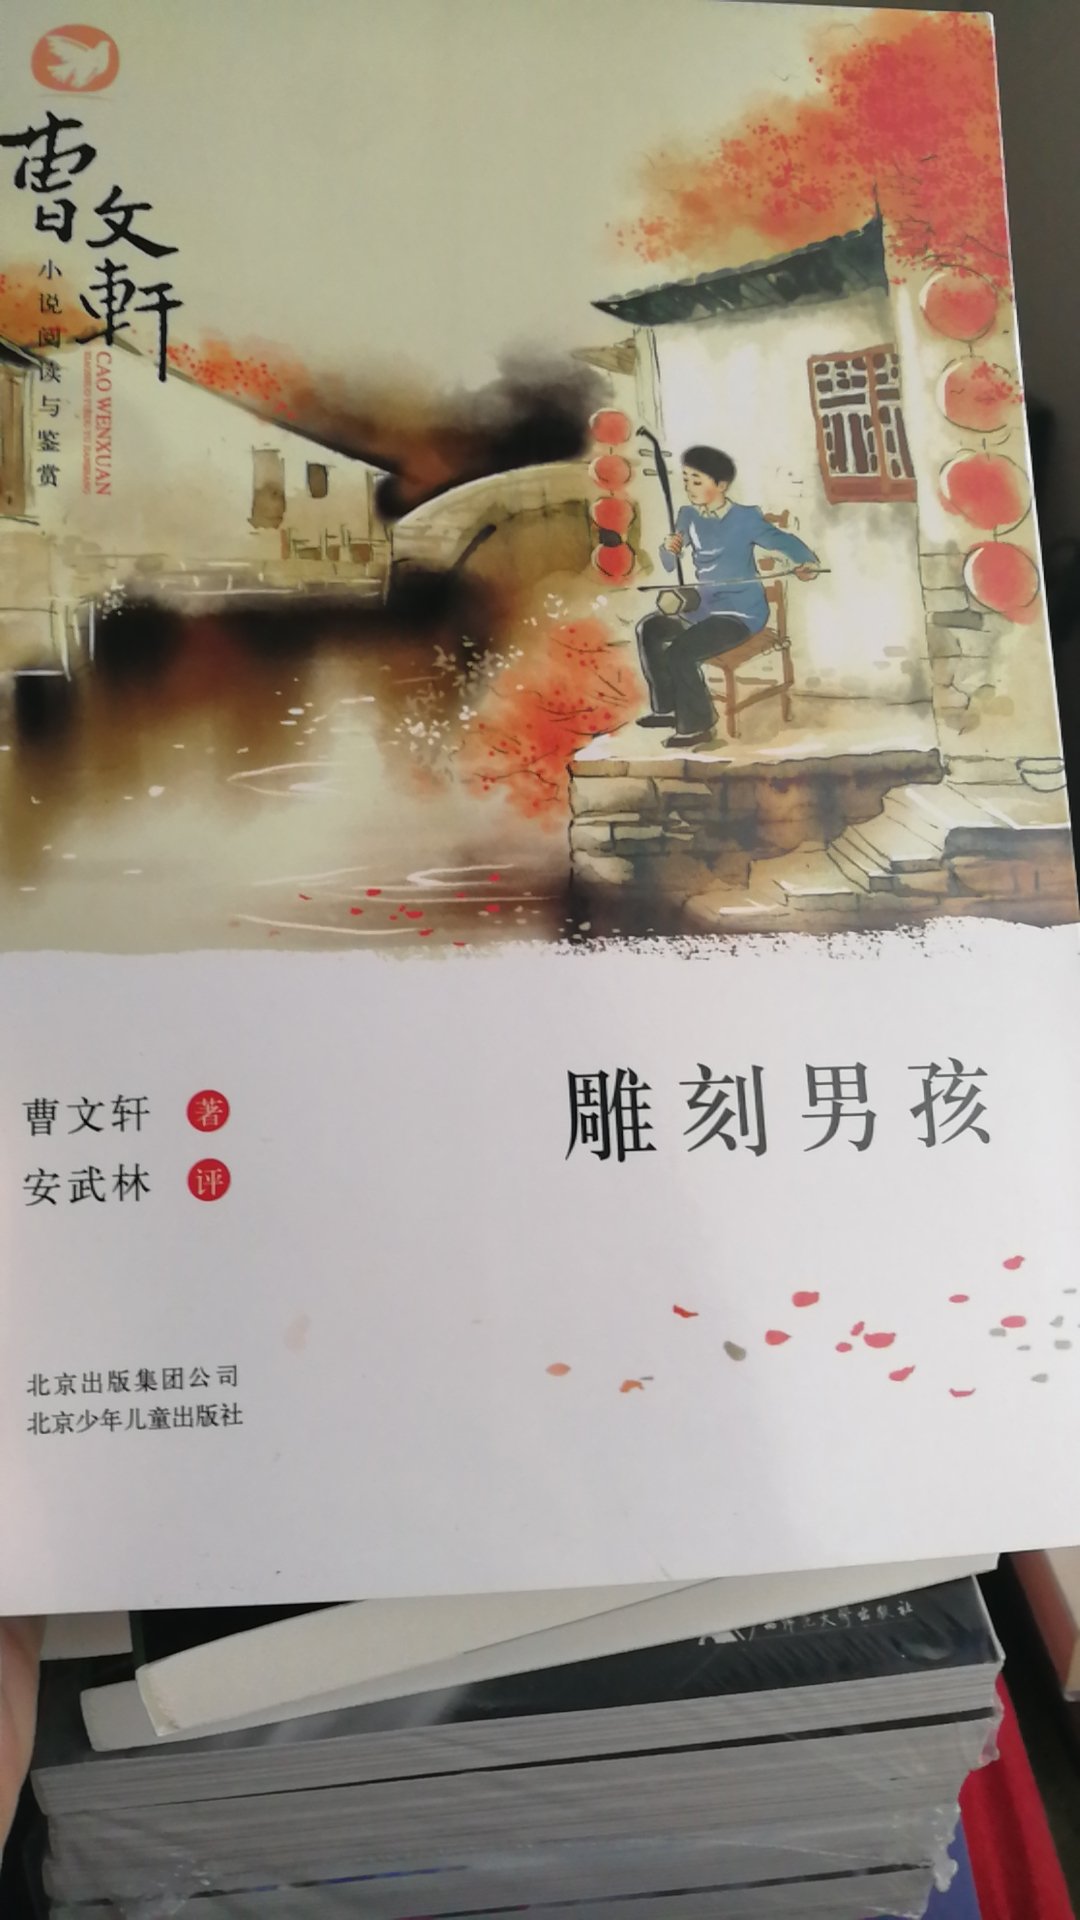 曹文轩老师的作品很唯美，给孩子买来读一读，远离那些打打闹闹的暴力文学，书包装也挺好的！